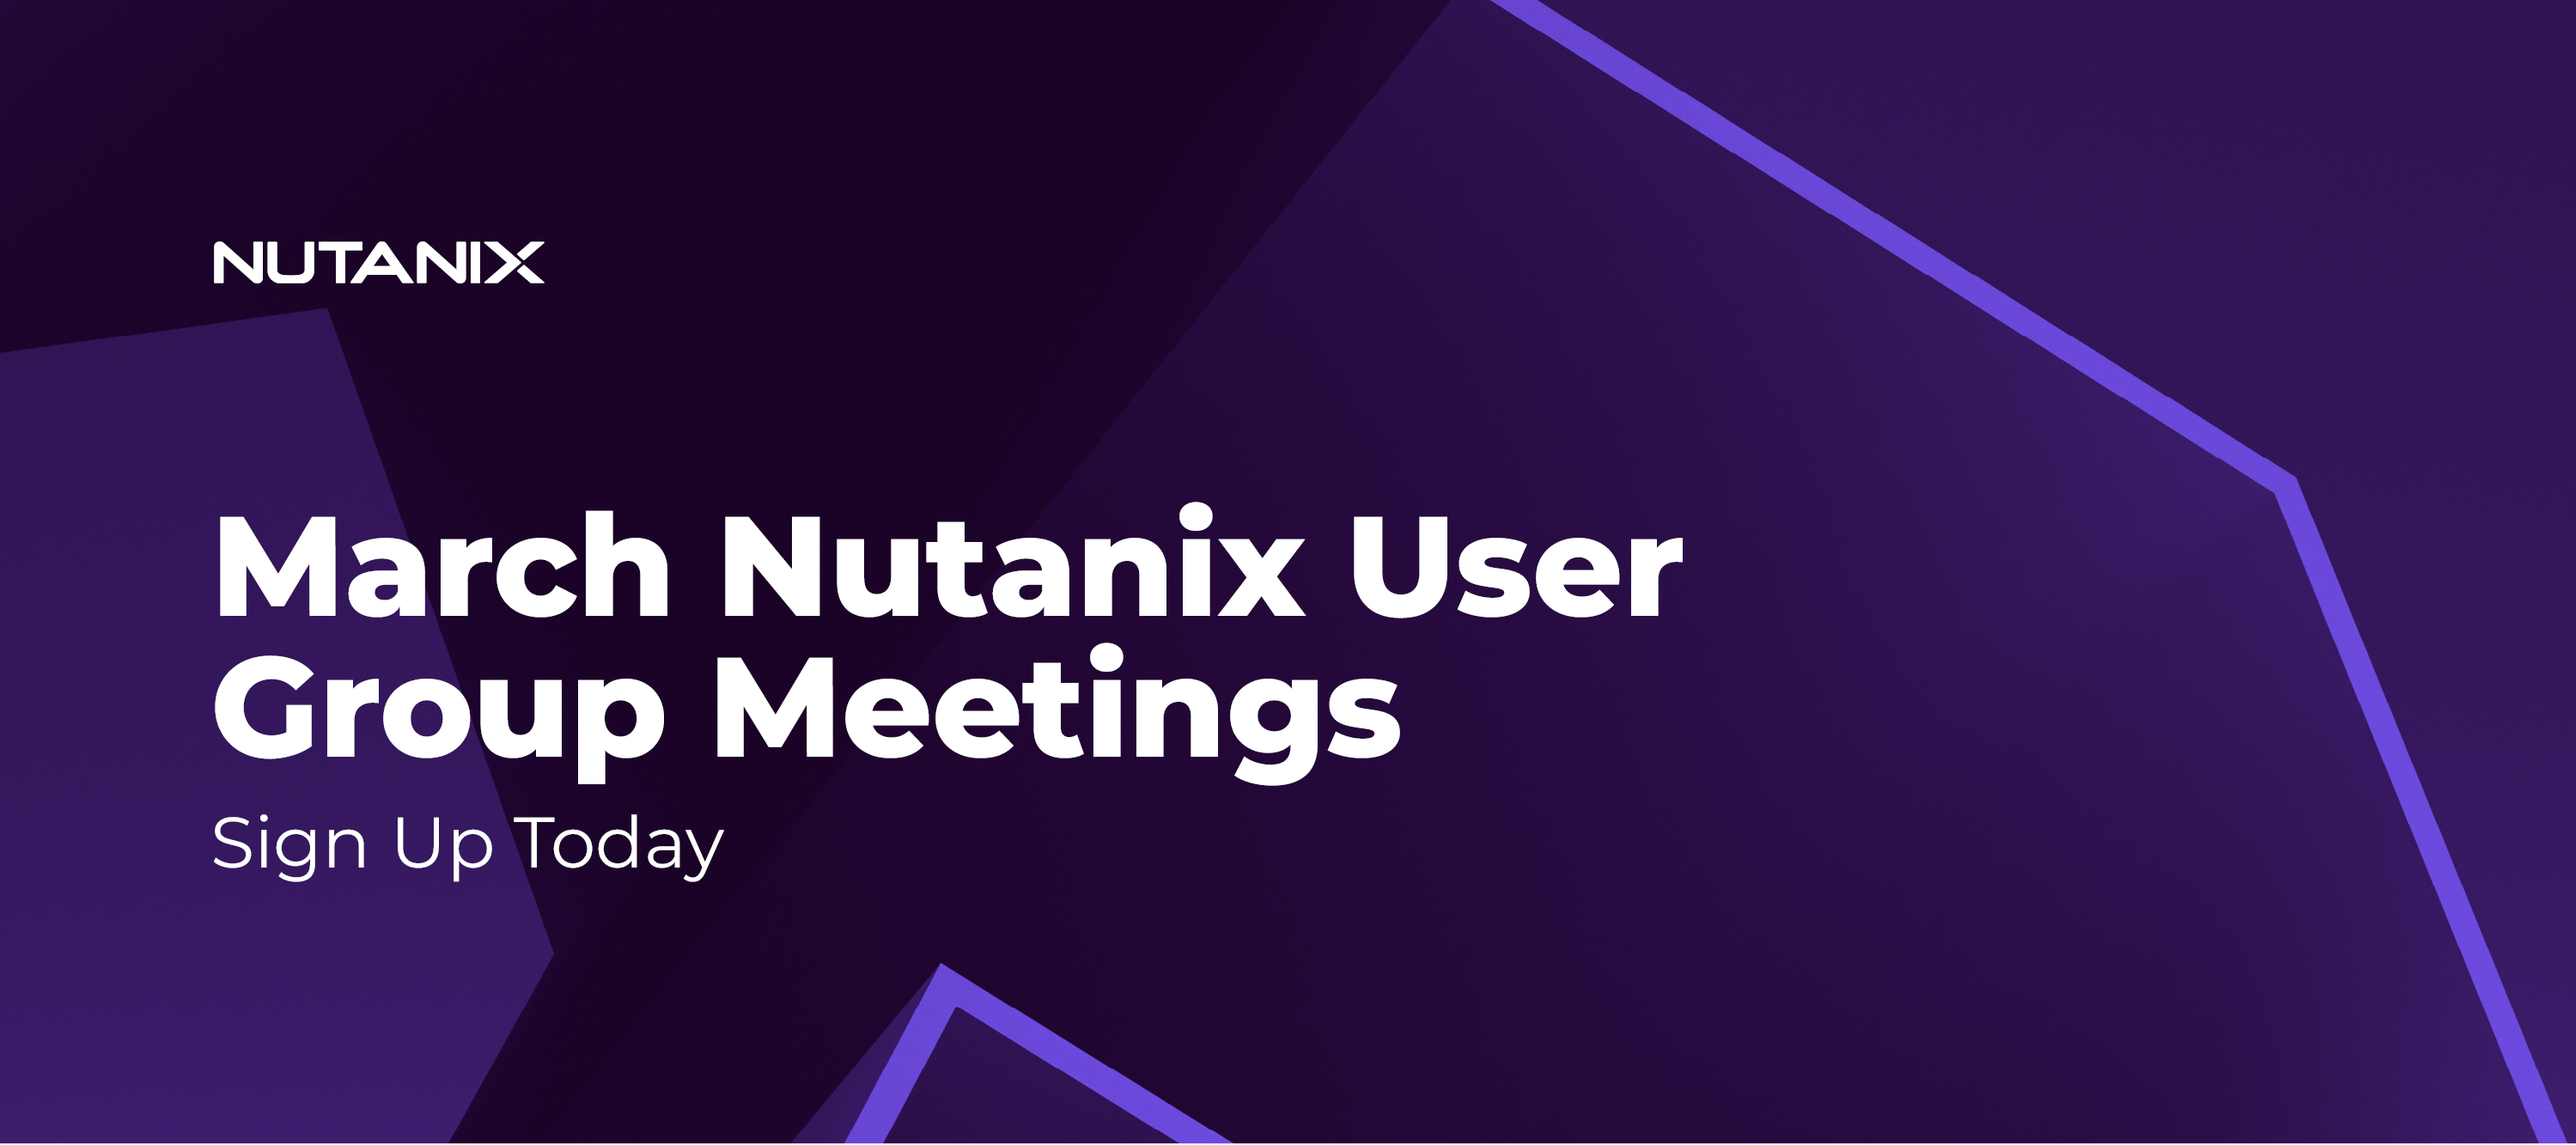 Nutanix User Group Meetings Happening in March